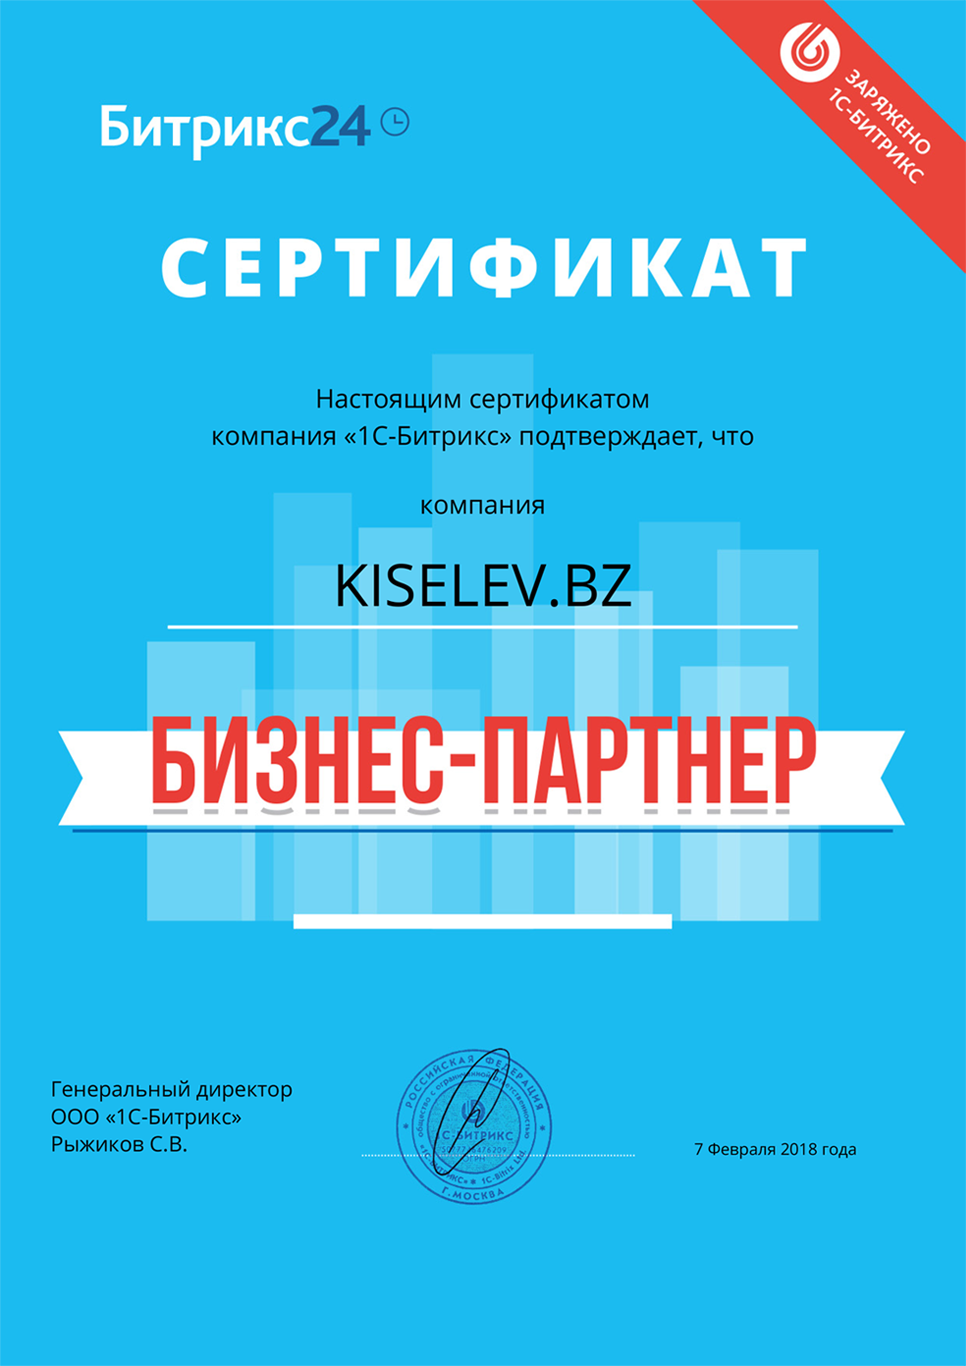 Сертификат партнёра по АМОСРМ в Дагестанских Огнях